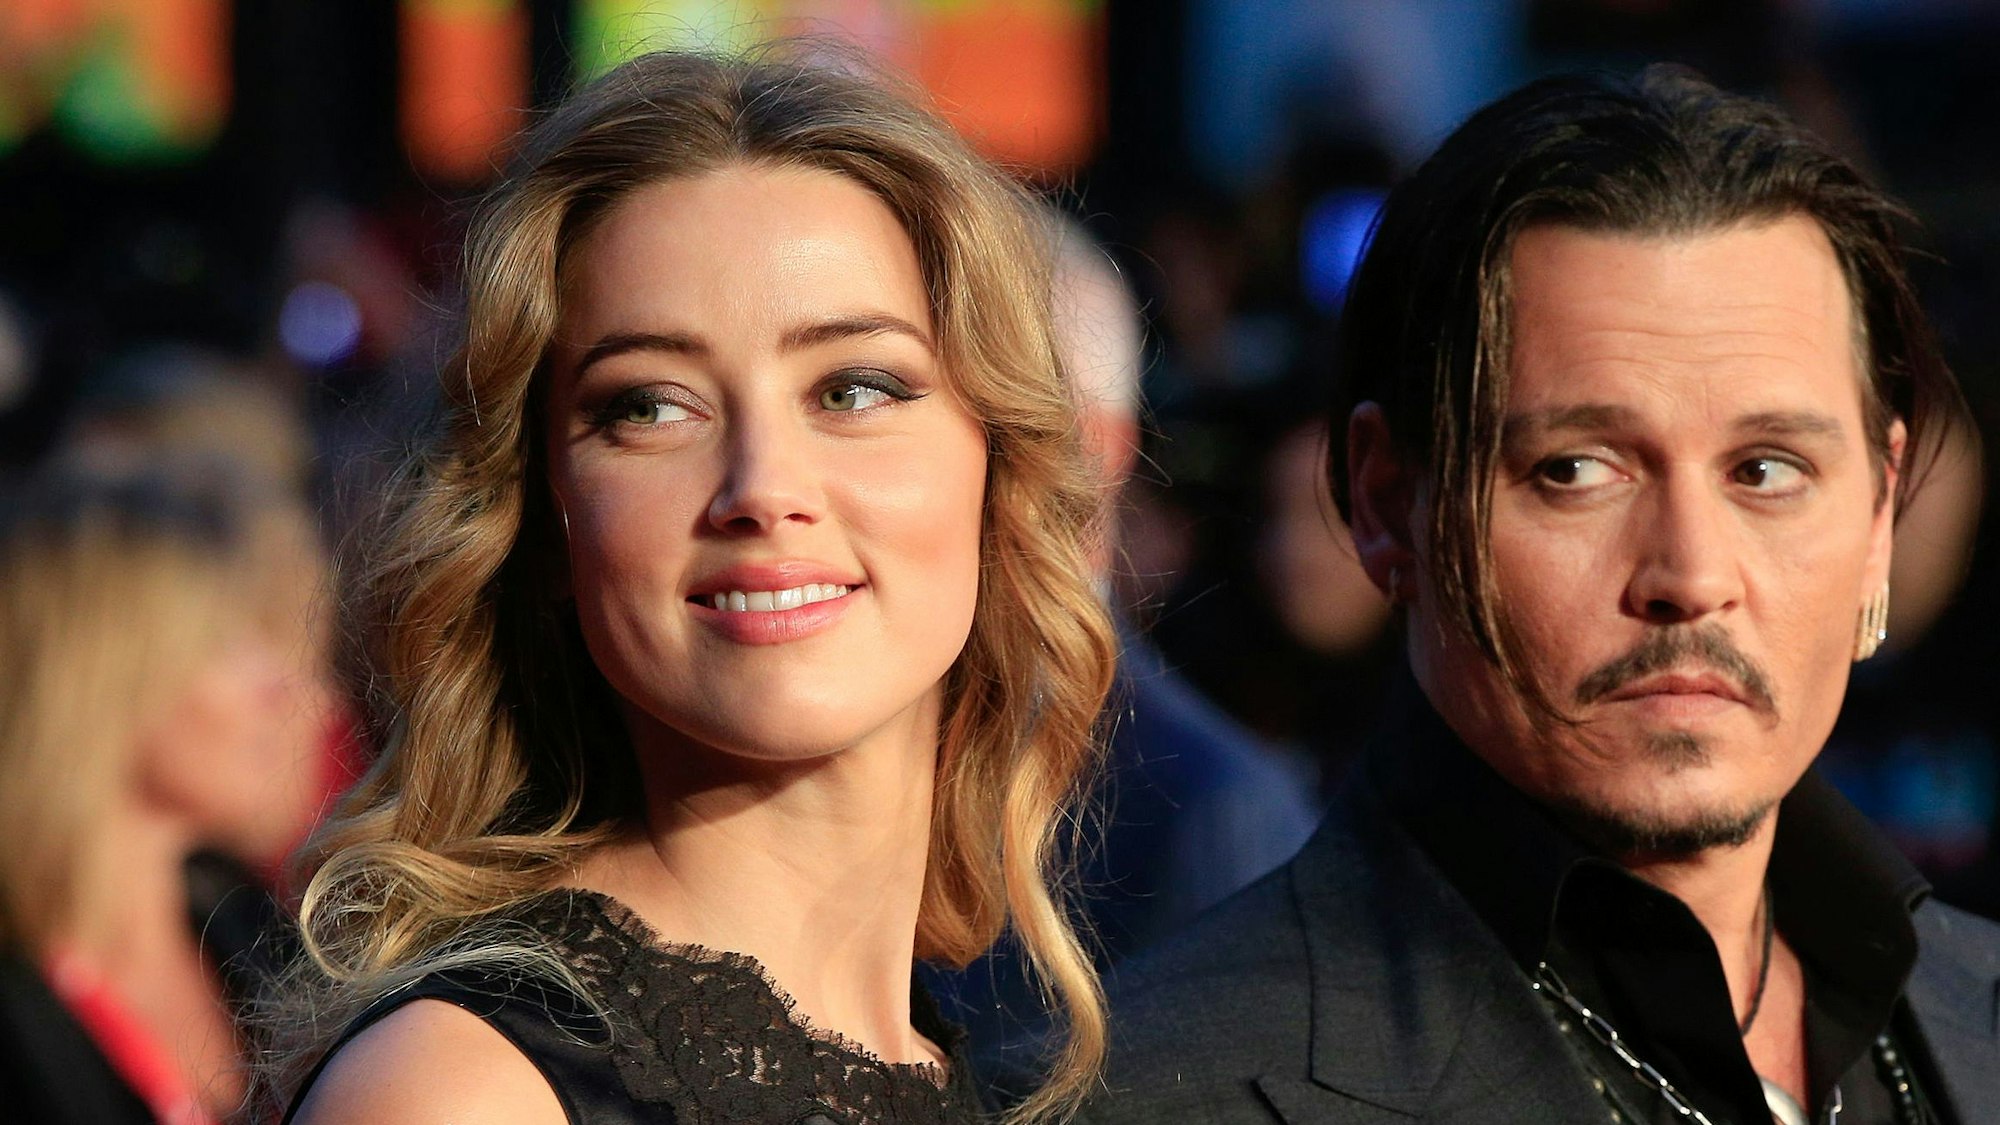 Das Archivfoto zeigt die US-Schauspielerin Amber Heard und ihren Mann Johnny Depp zusammen in London im Jahr 2015.